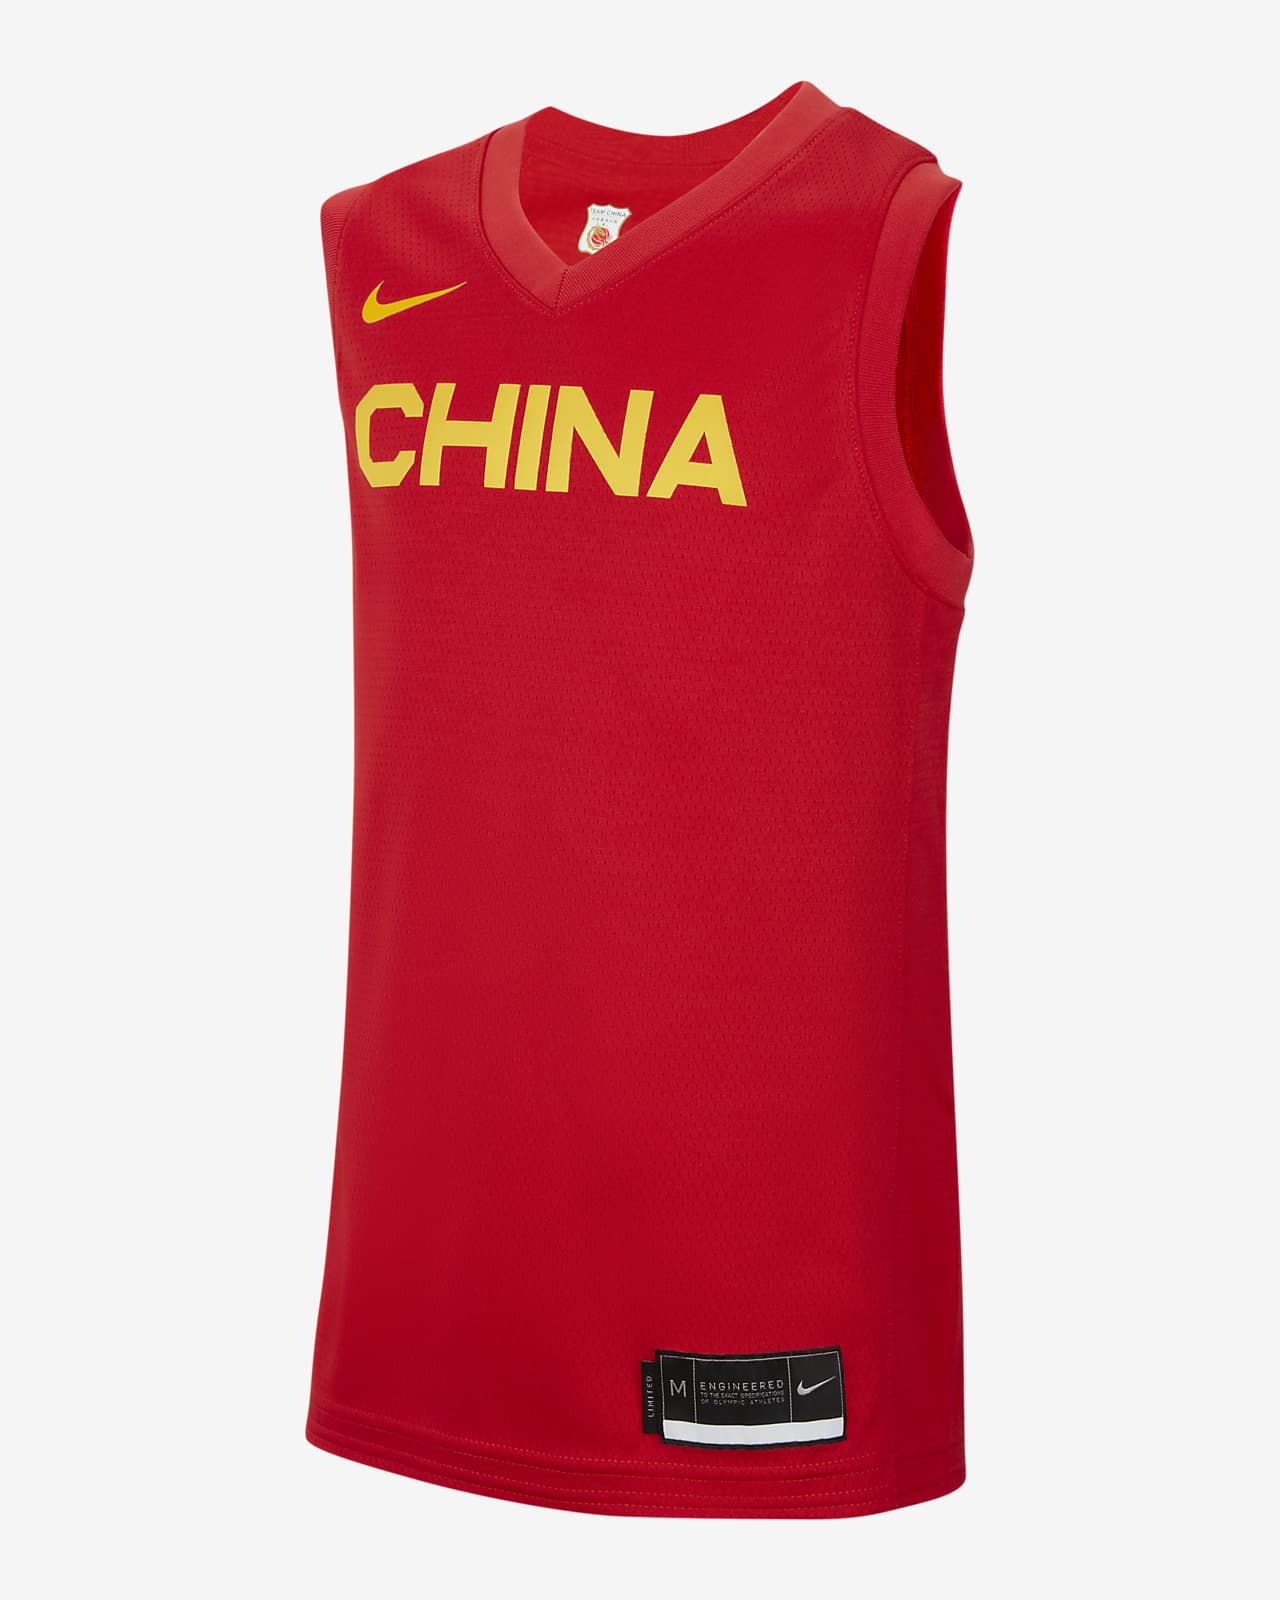 Φανέλα μπάσκετ Nike Κίνα (Road) για μεγάλα παιδιά